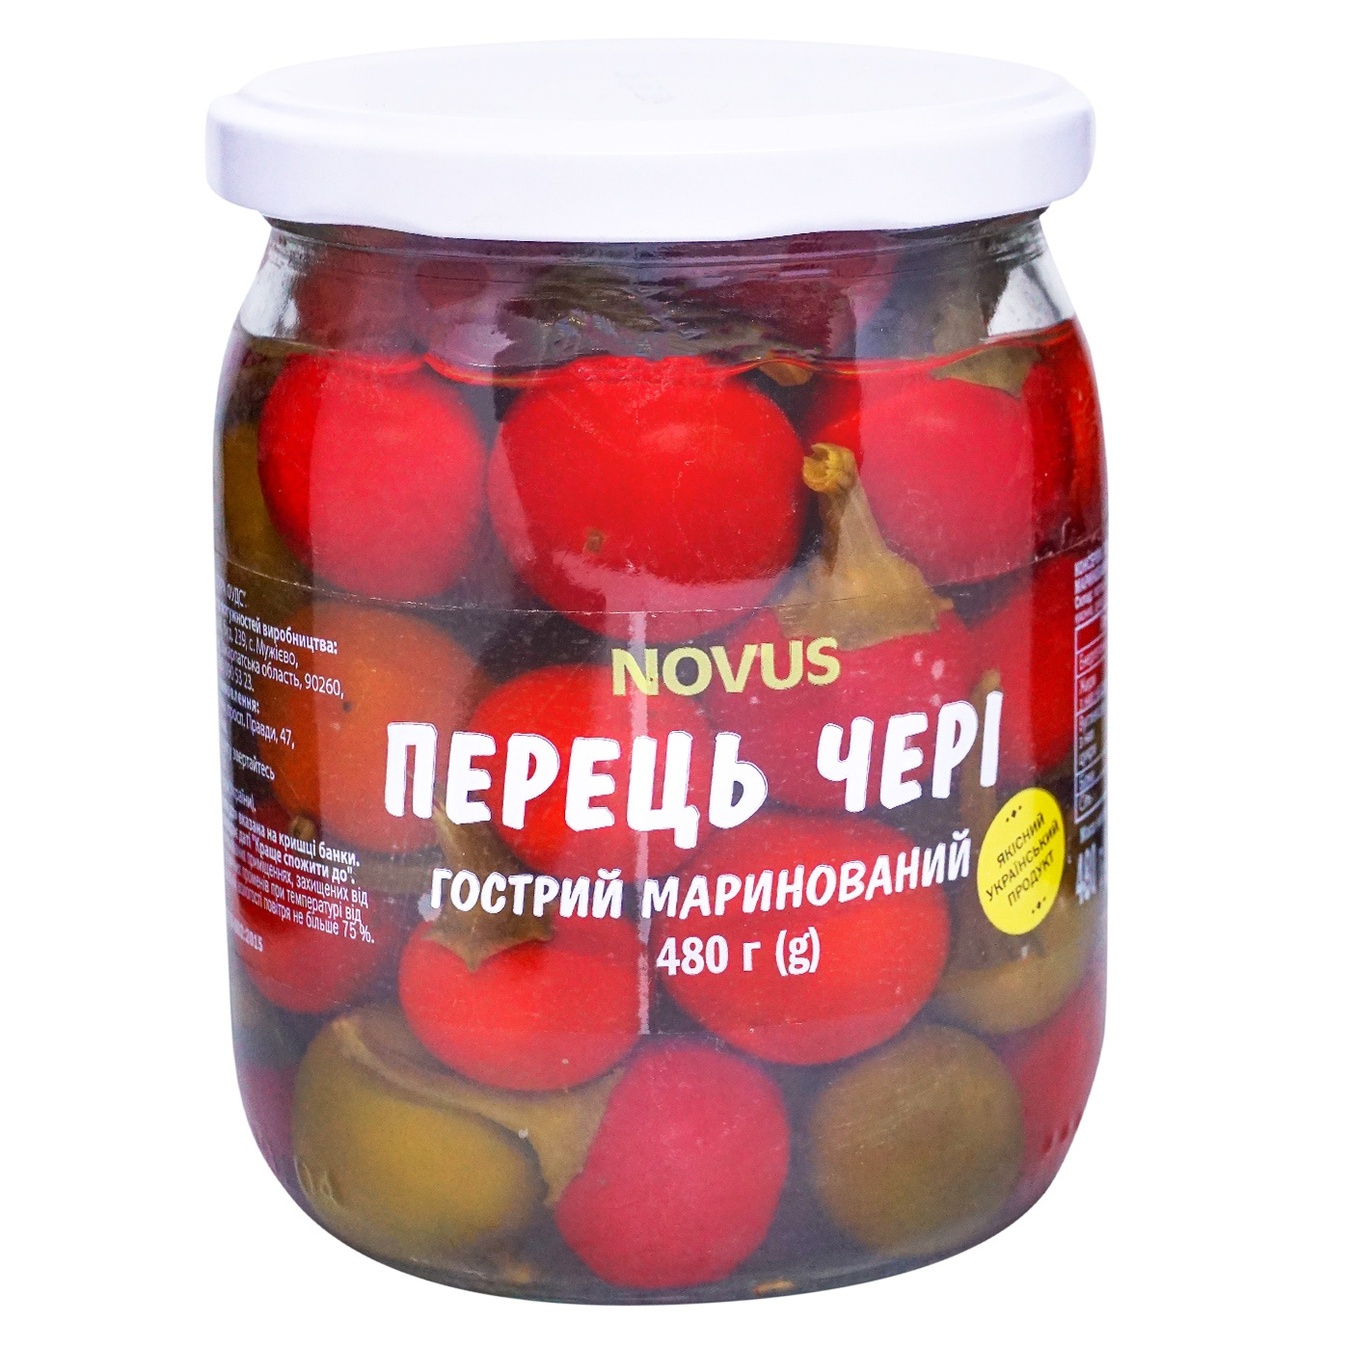 NOVUS hot pickled cherry pepper pasteurized 480g